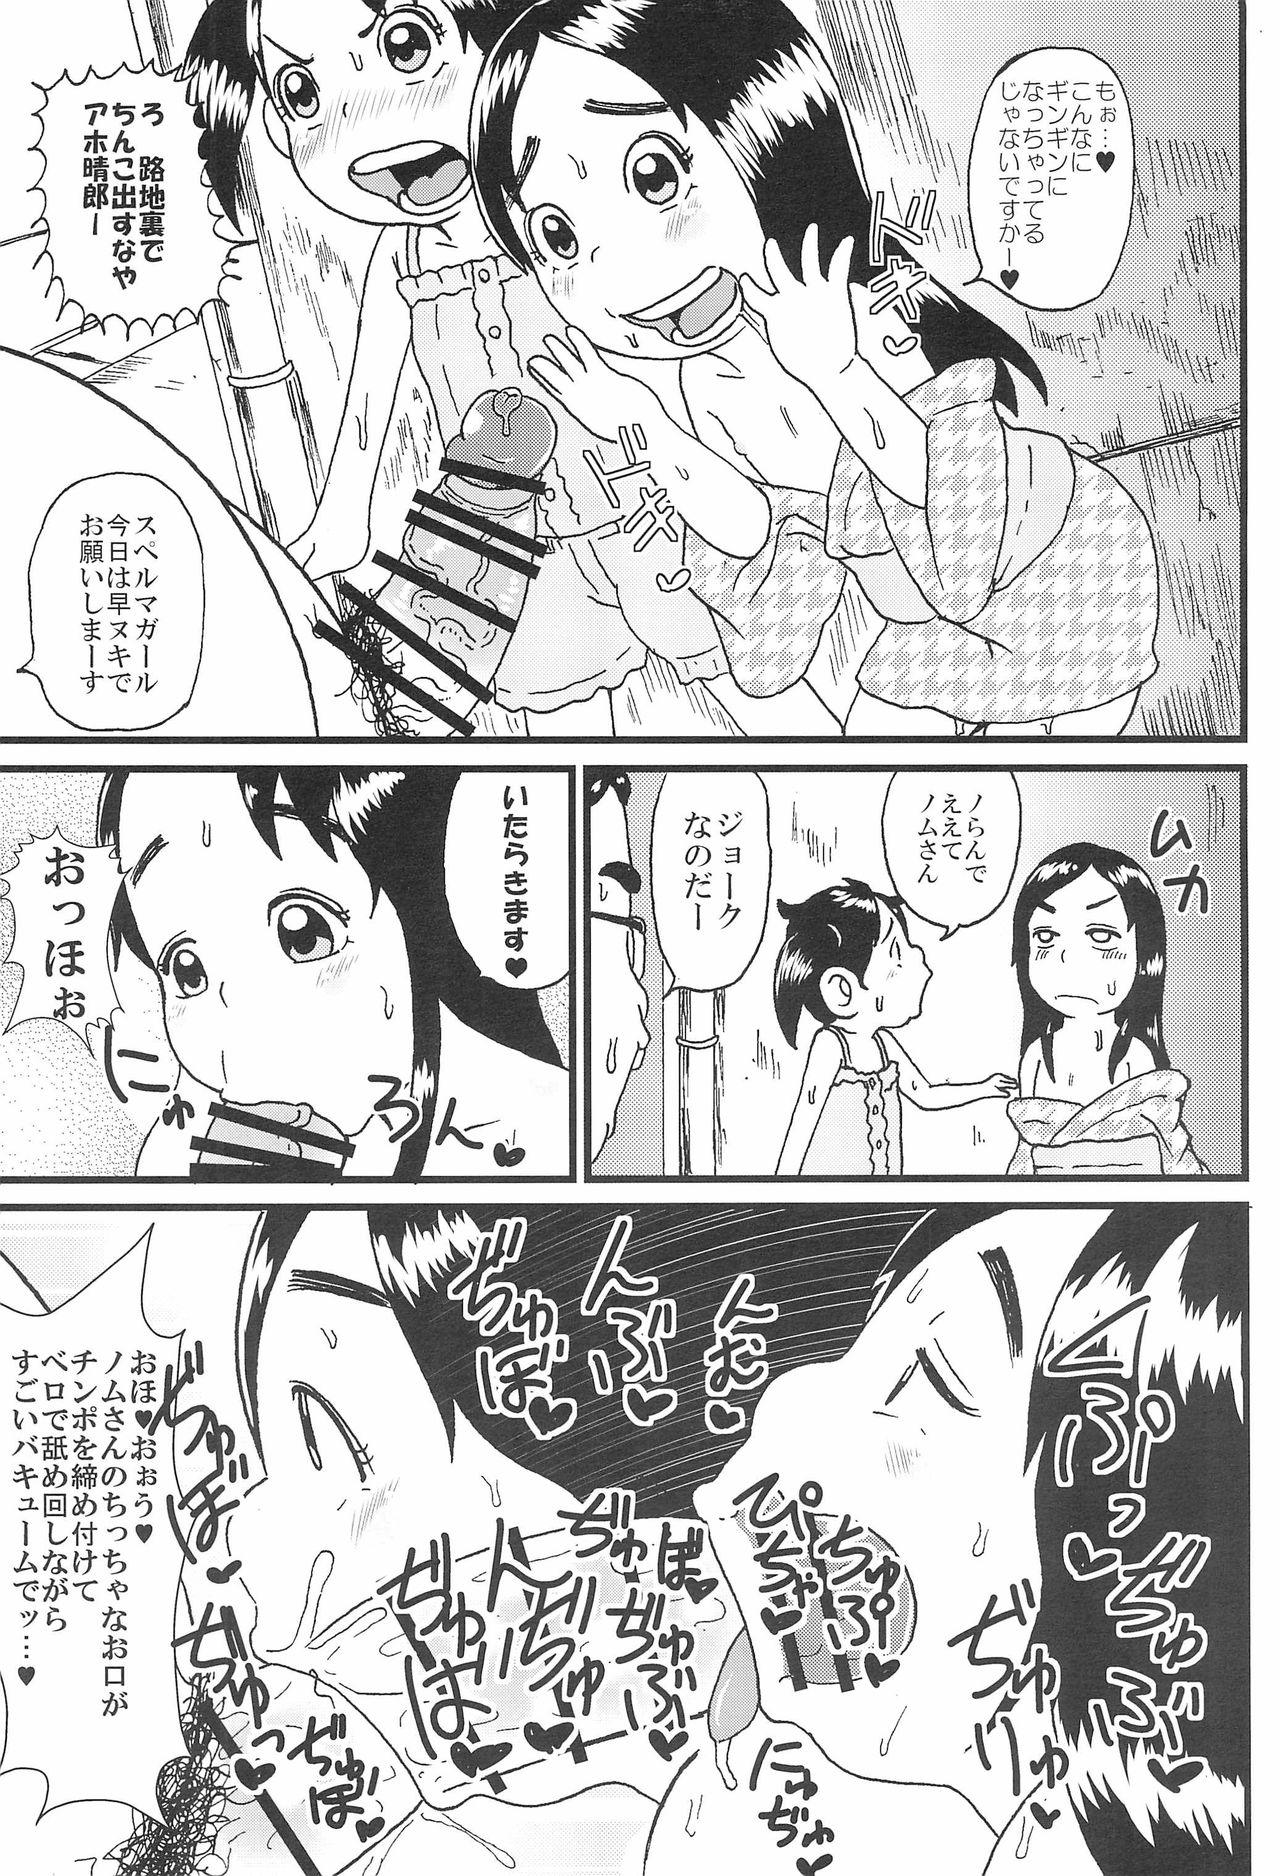 Outdoor Urayasu Chibikko Land - Super radical gag family Monster Dick - Page 9